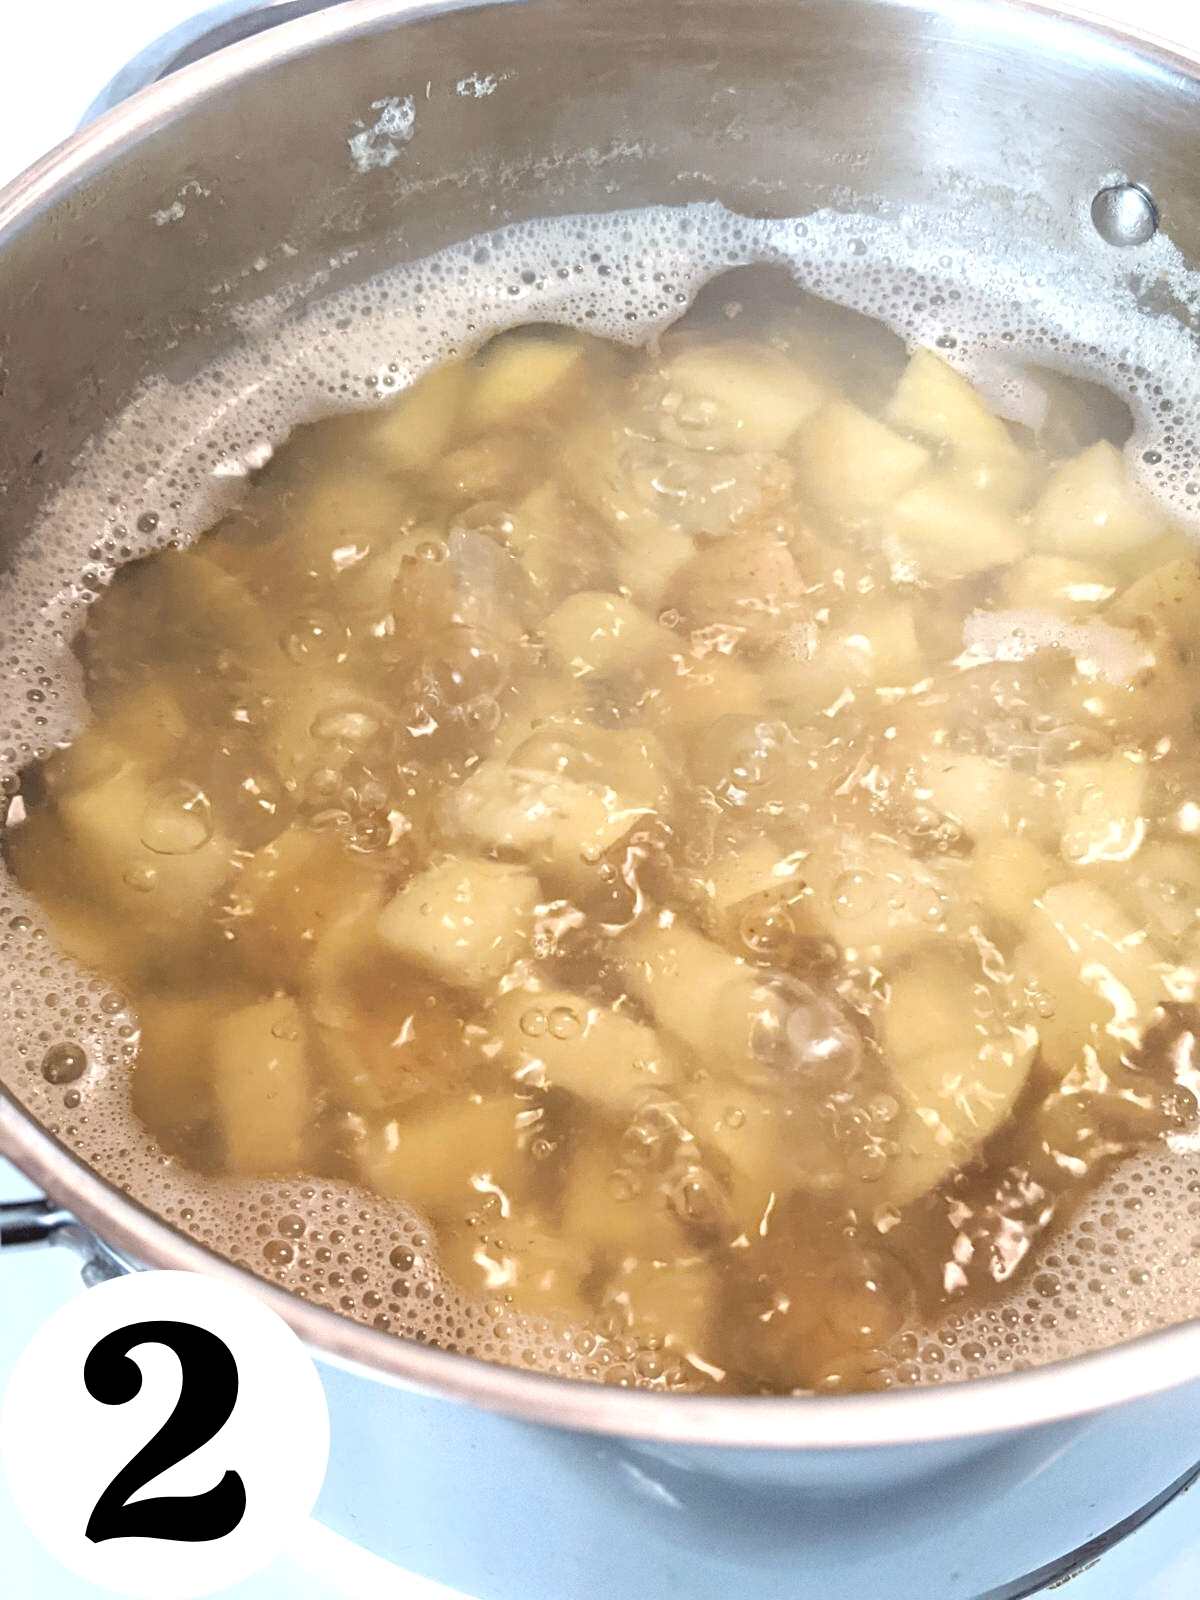 Boiling potatoes in pan.